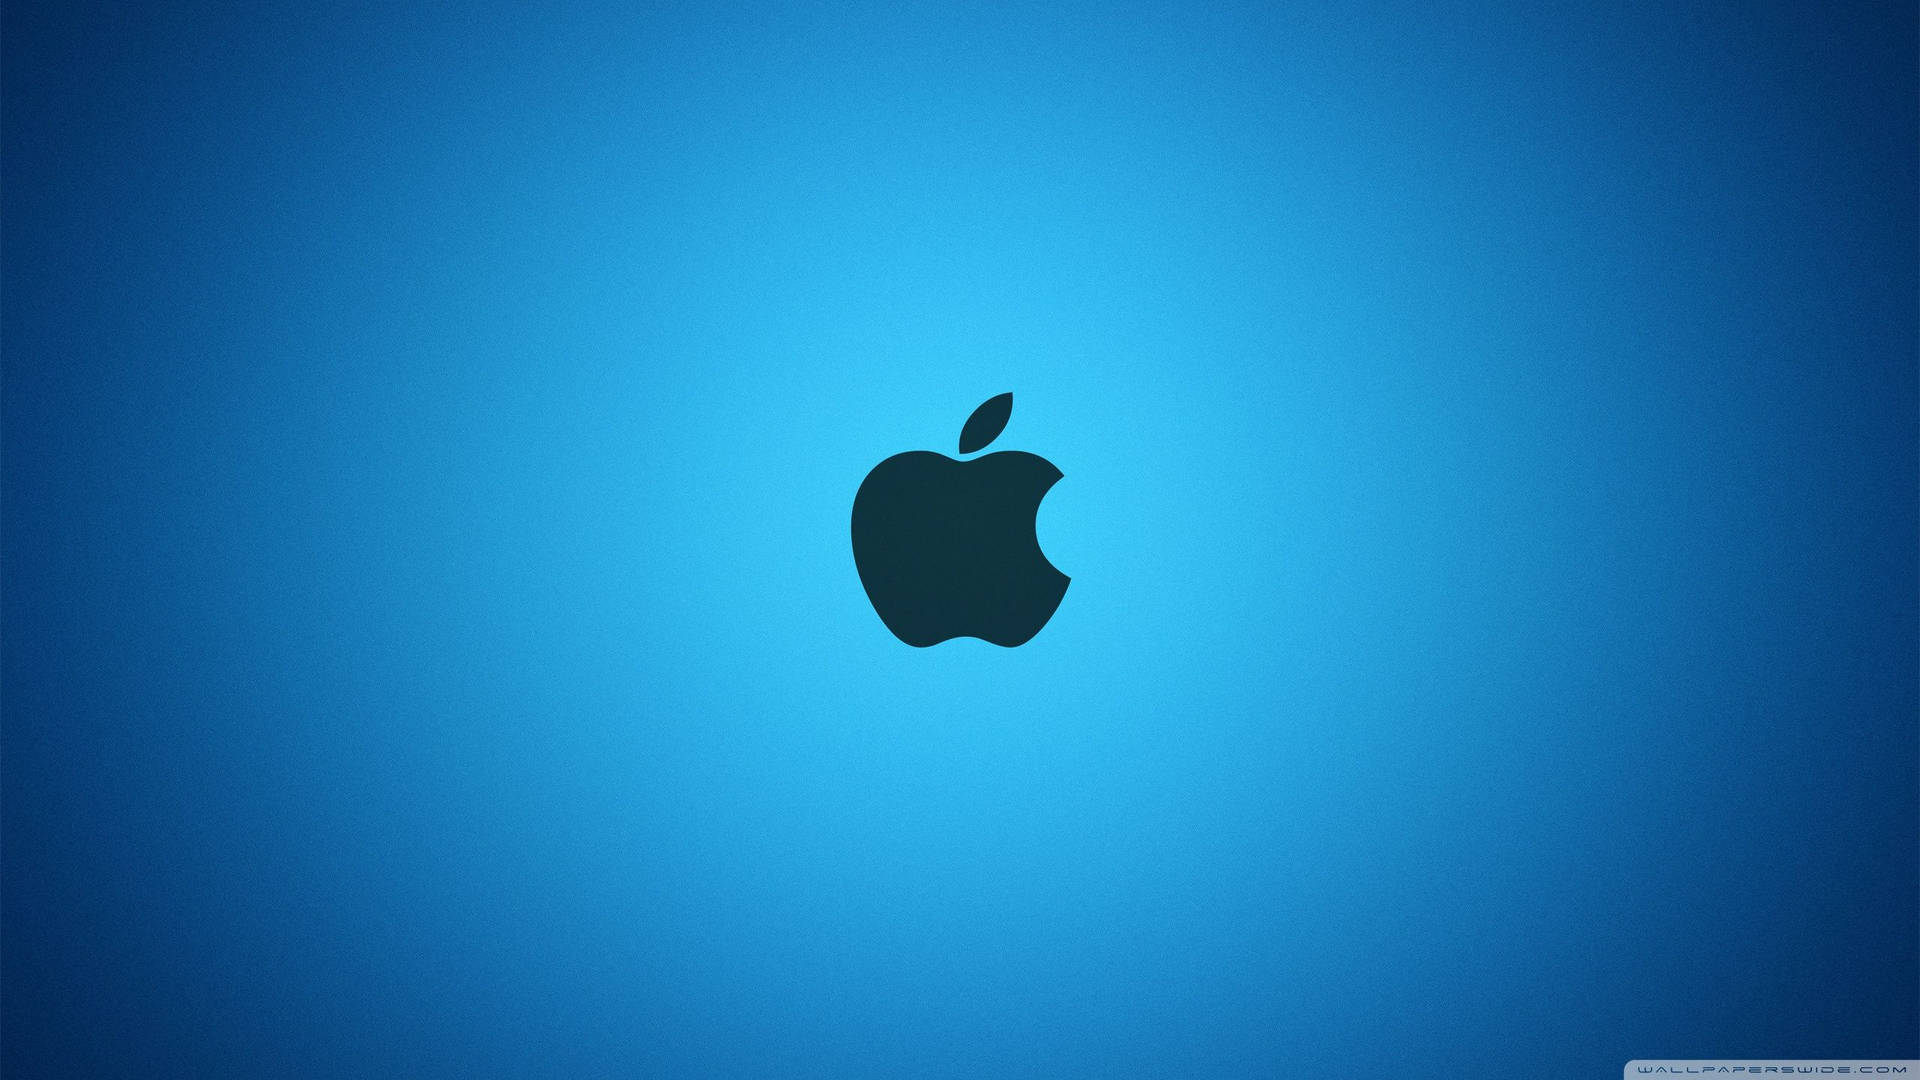 Dark Apple Logo On Bright Blue